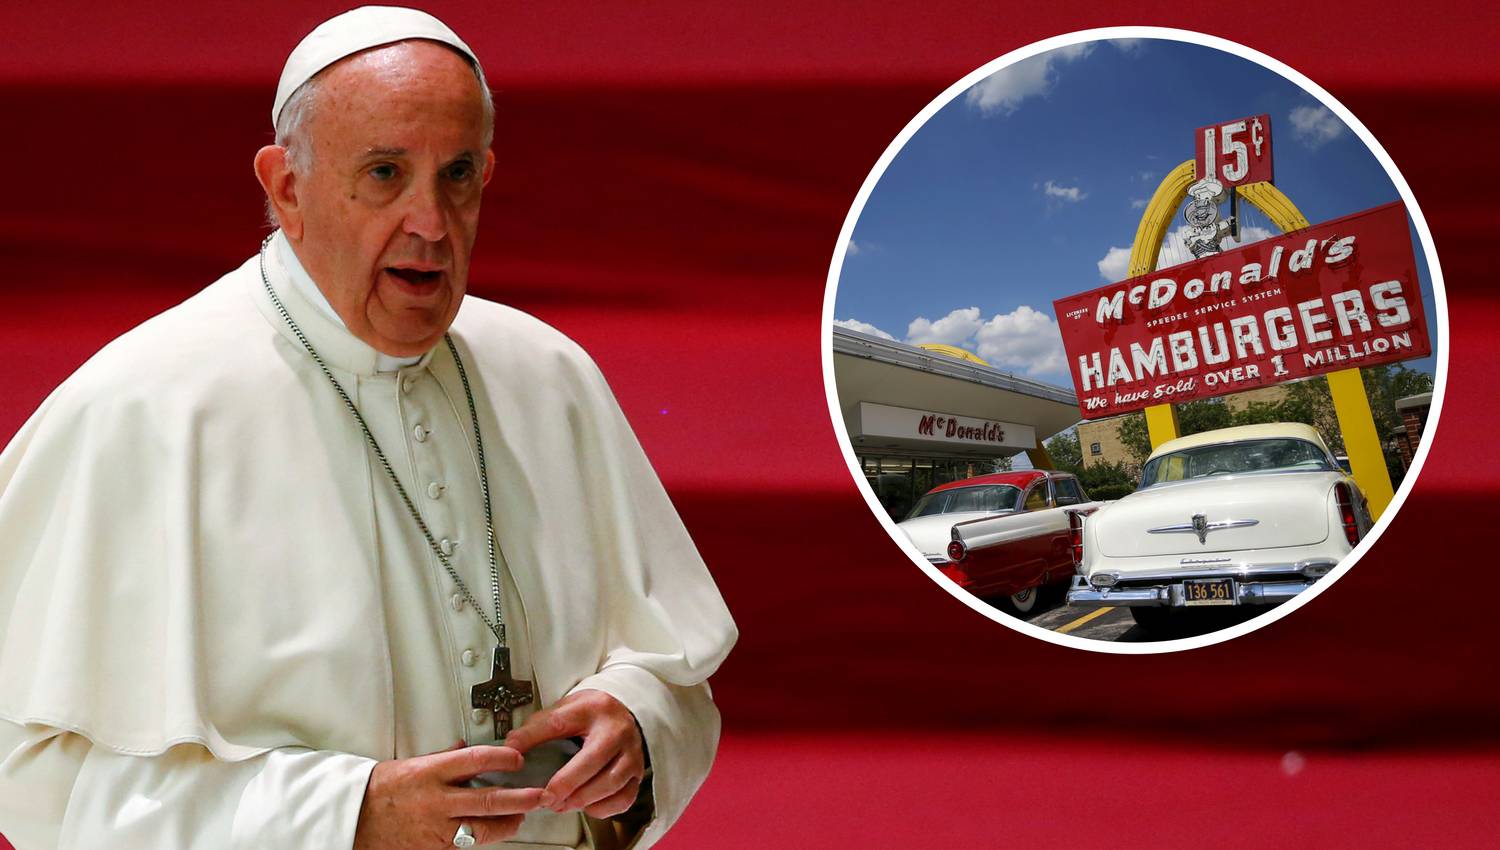 Dio kardinala se ljuti jer žele otvoriti McDonald's u Vatikanu